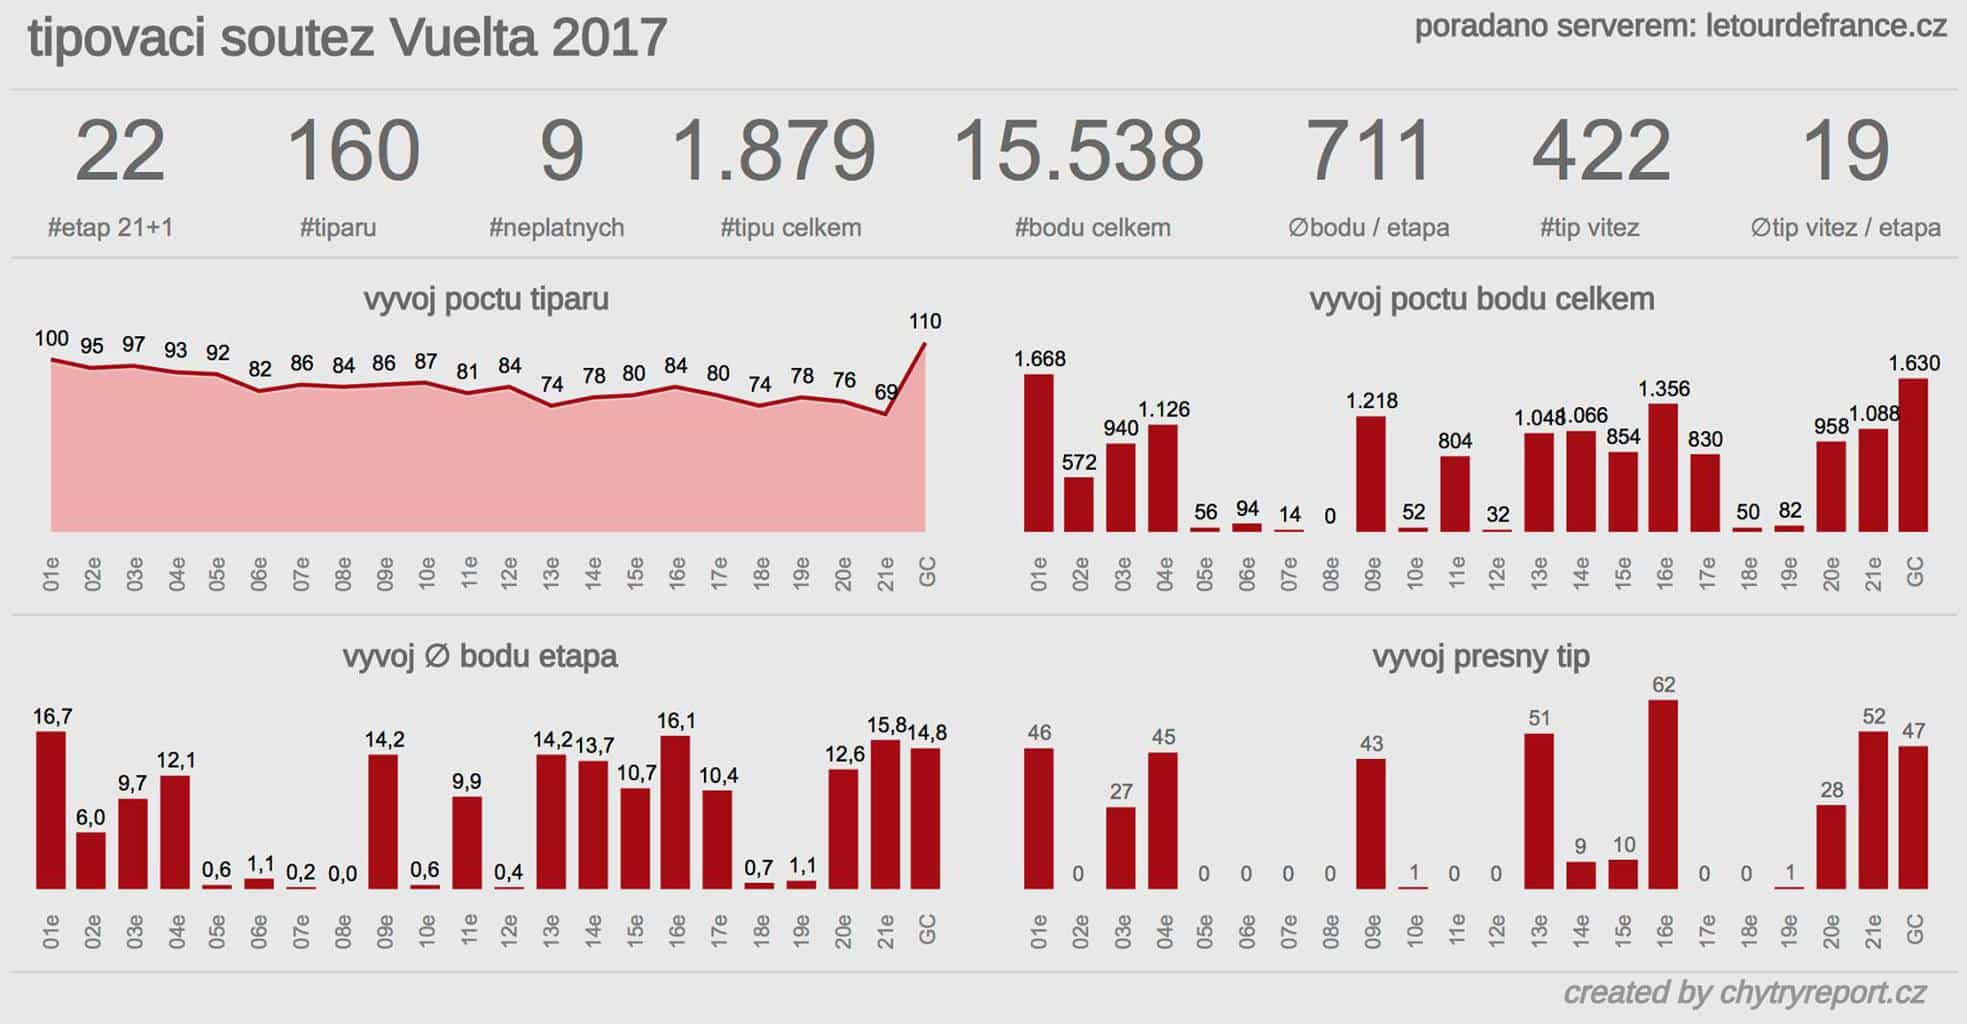 Soutěž Vuelta 2017 celkem 4